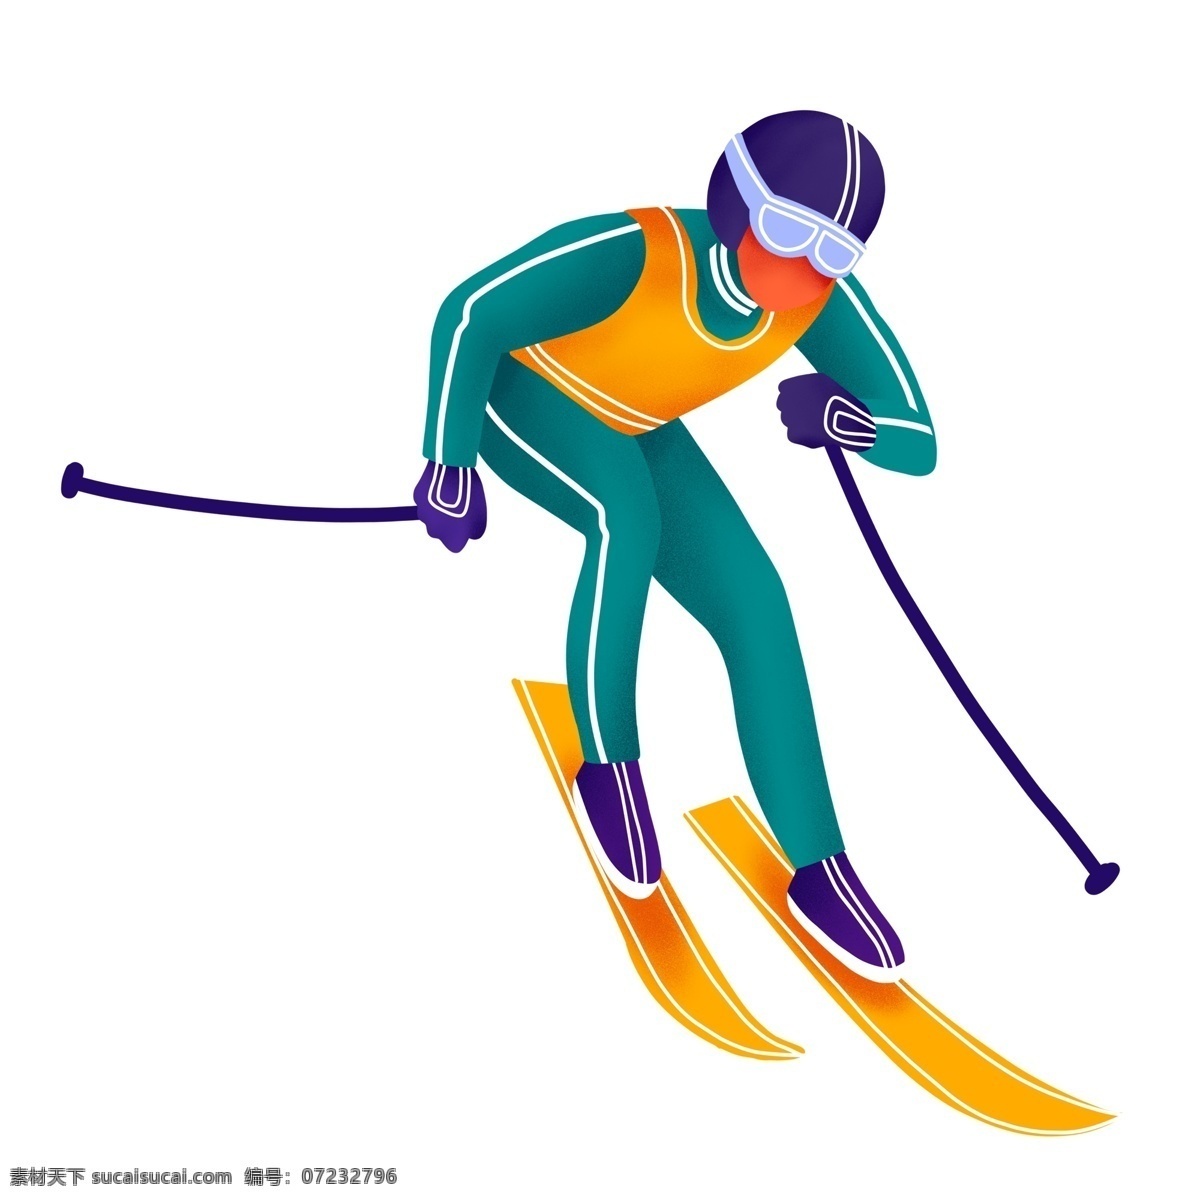 缤纷 彩色 滑雪 运动员 手绘 卡通 插画 人物